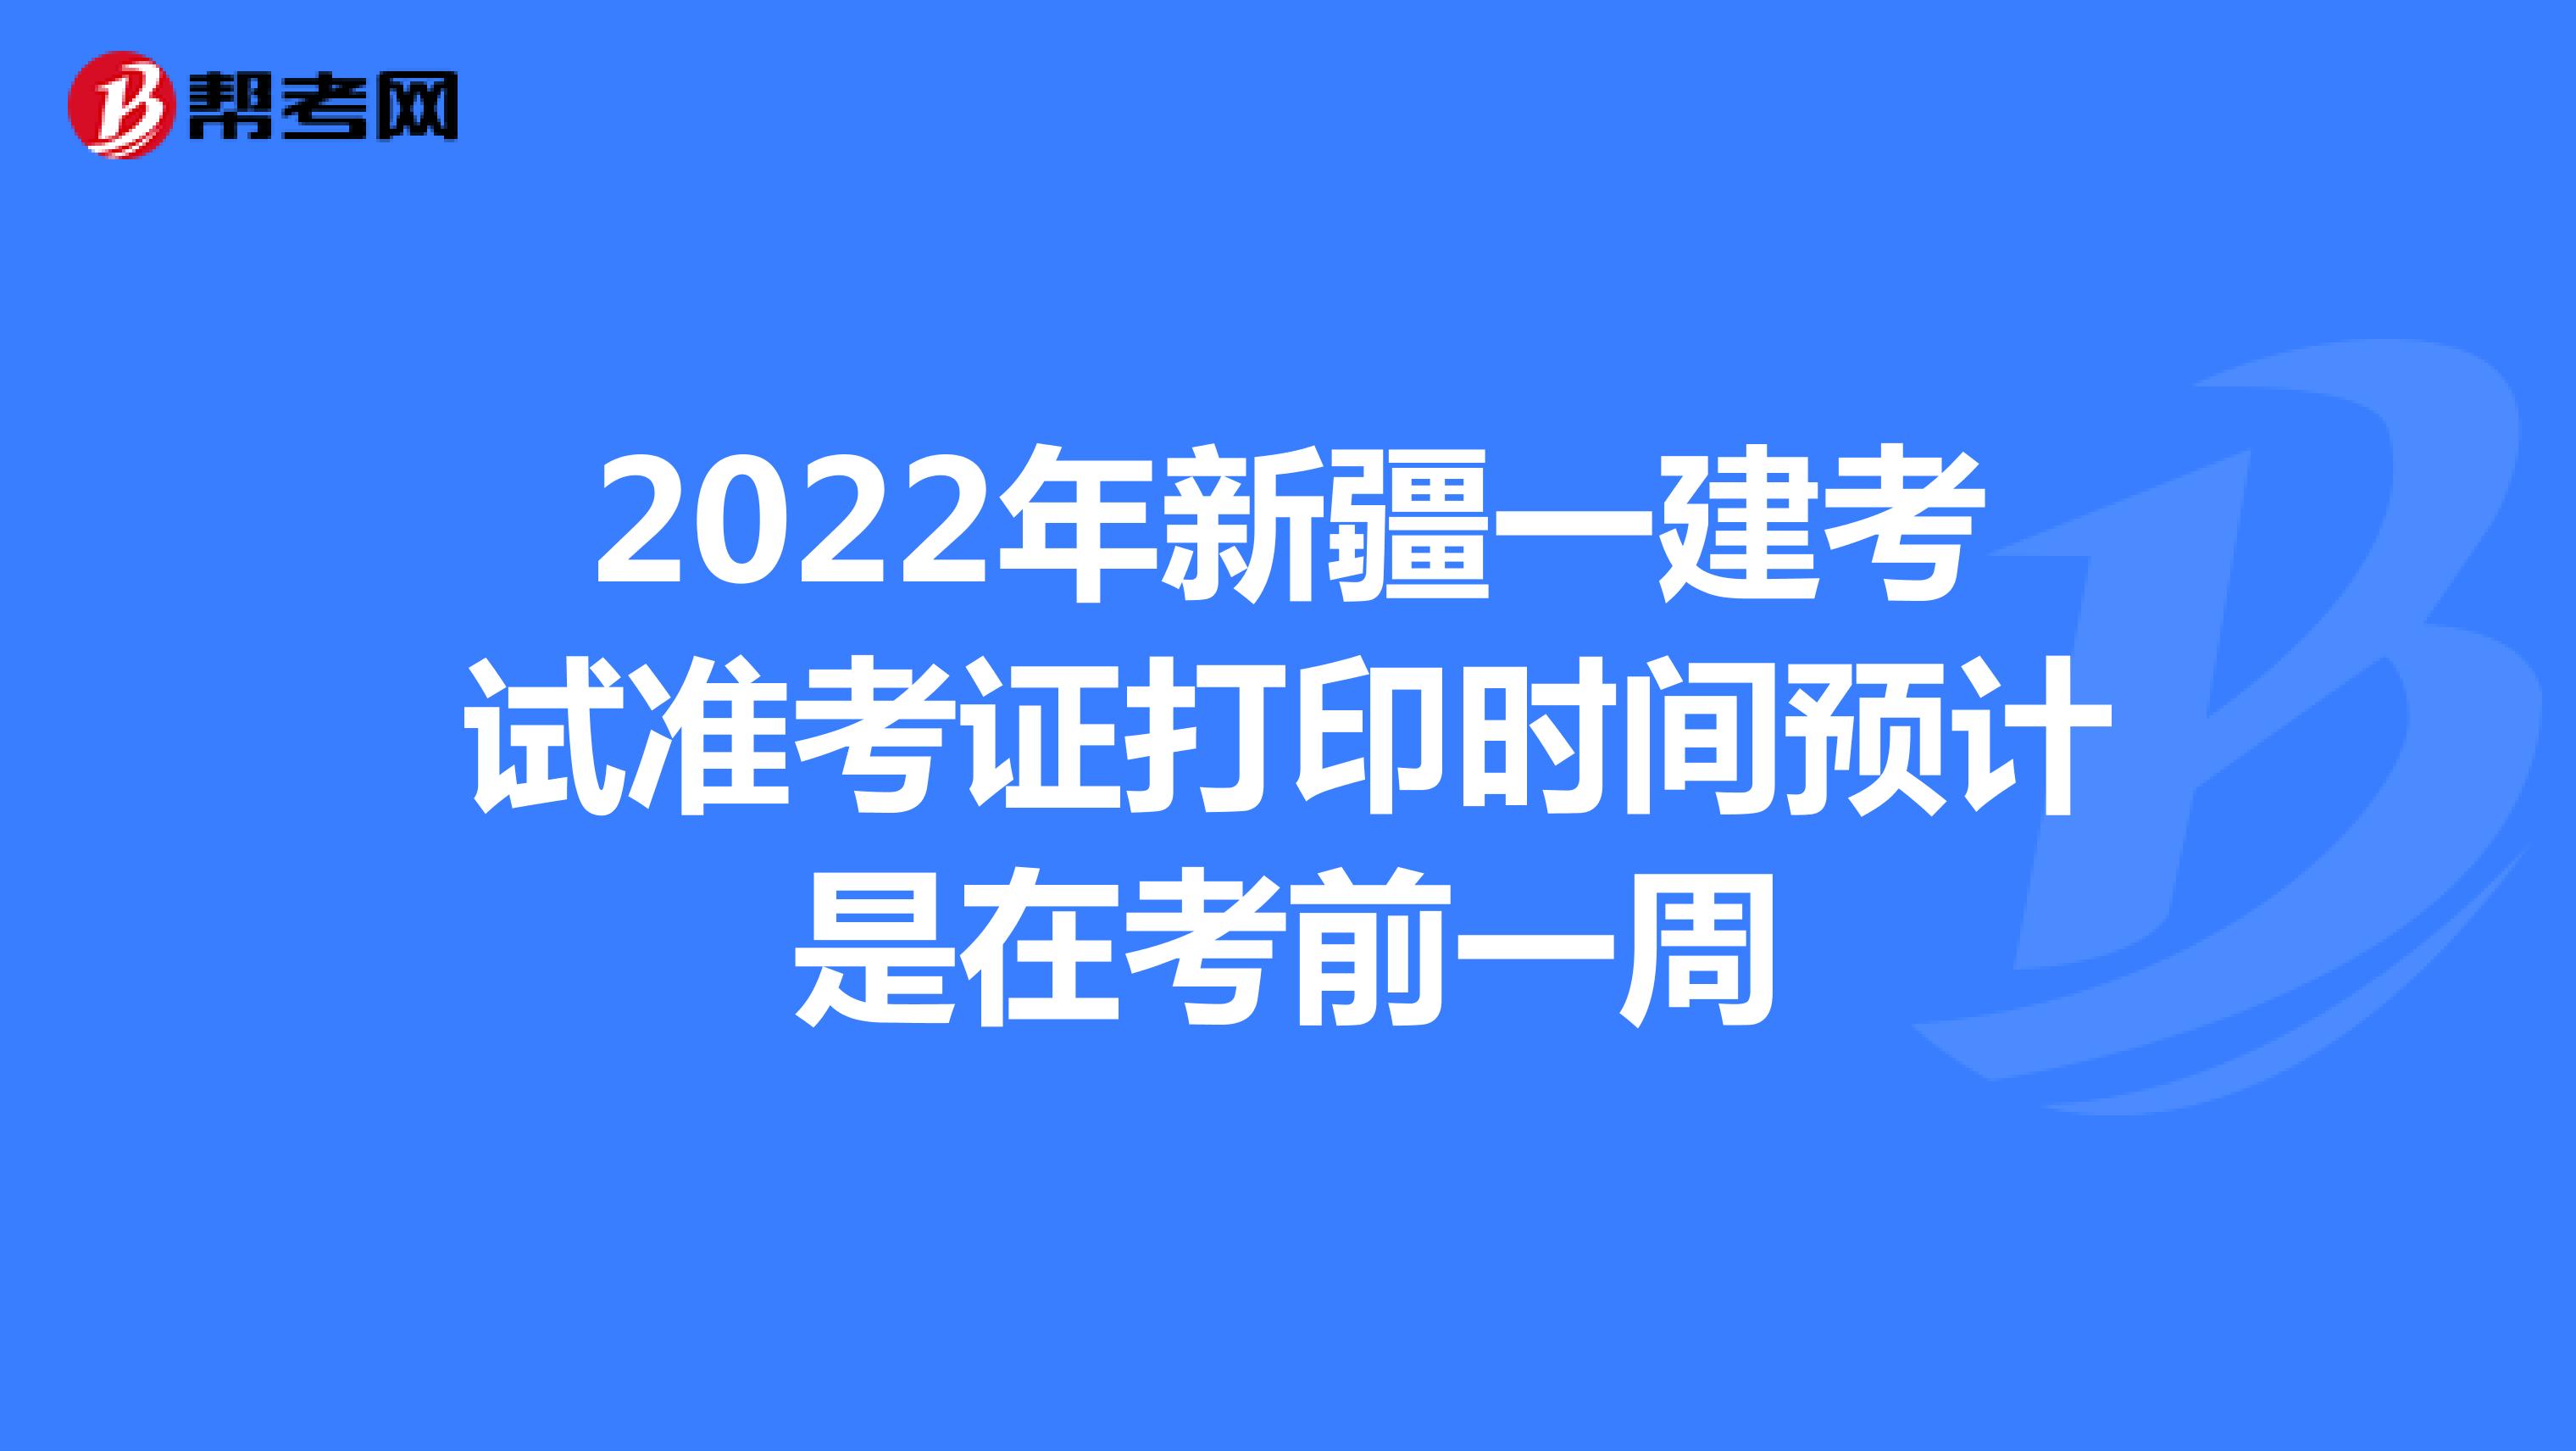 2022年新疆一建考试准考证打印时间预计是在考前一周